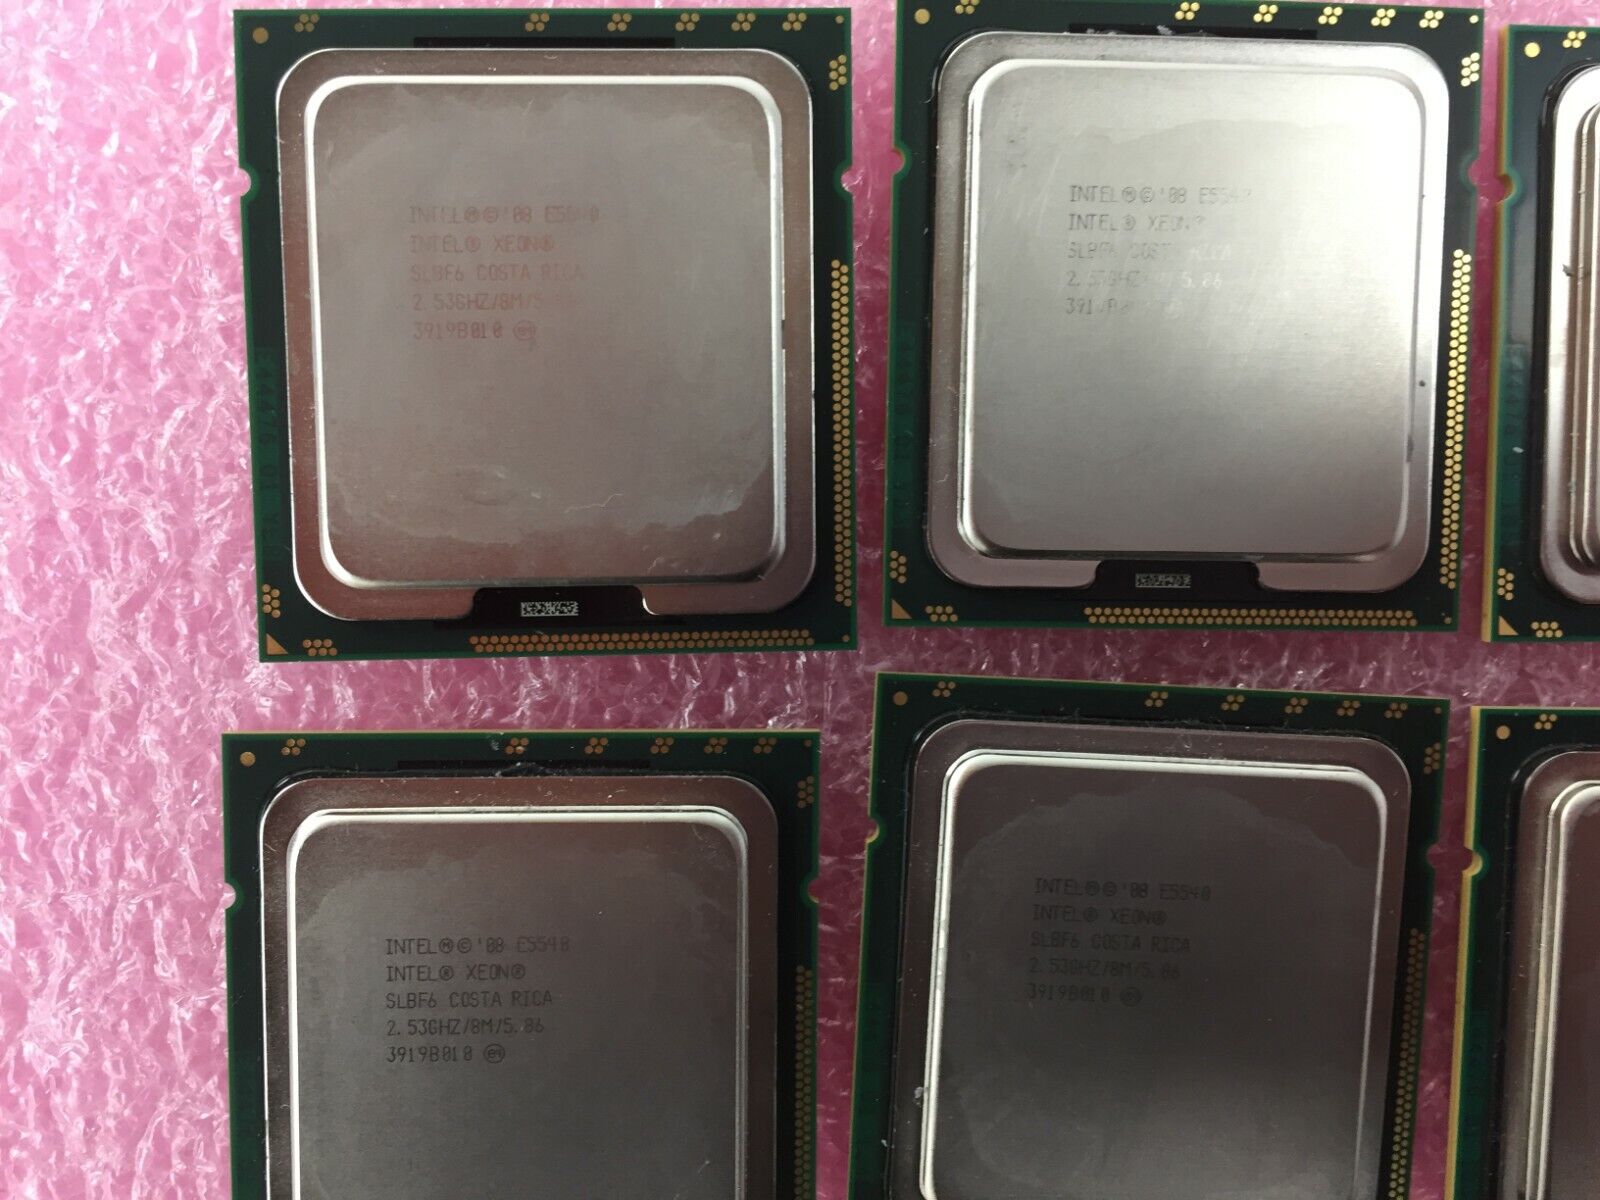 Lot of (6) Intel Xeon E5540 SLBF6 2.53GHz LGA1366 Quad Core Server Processor